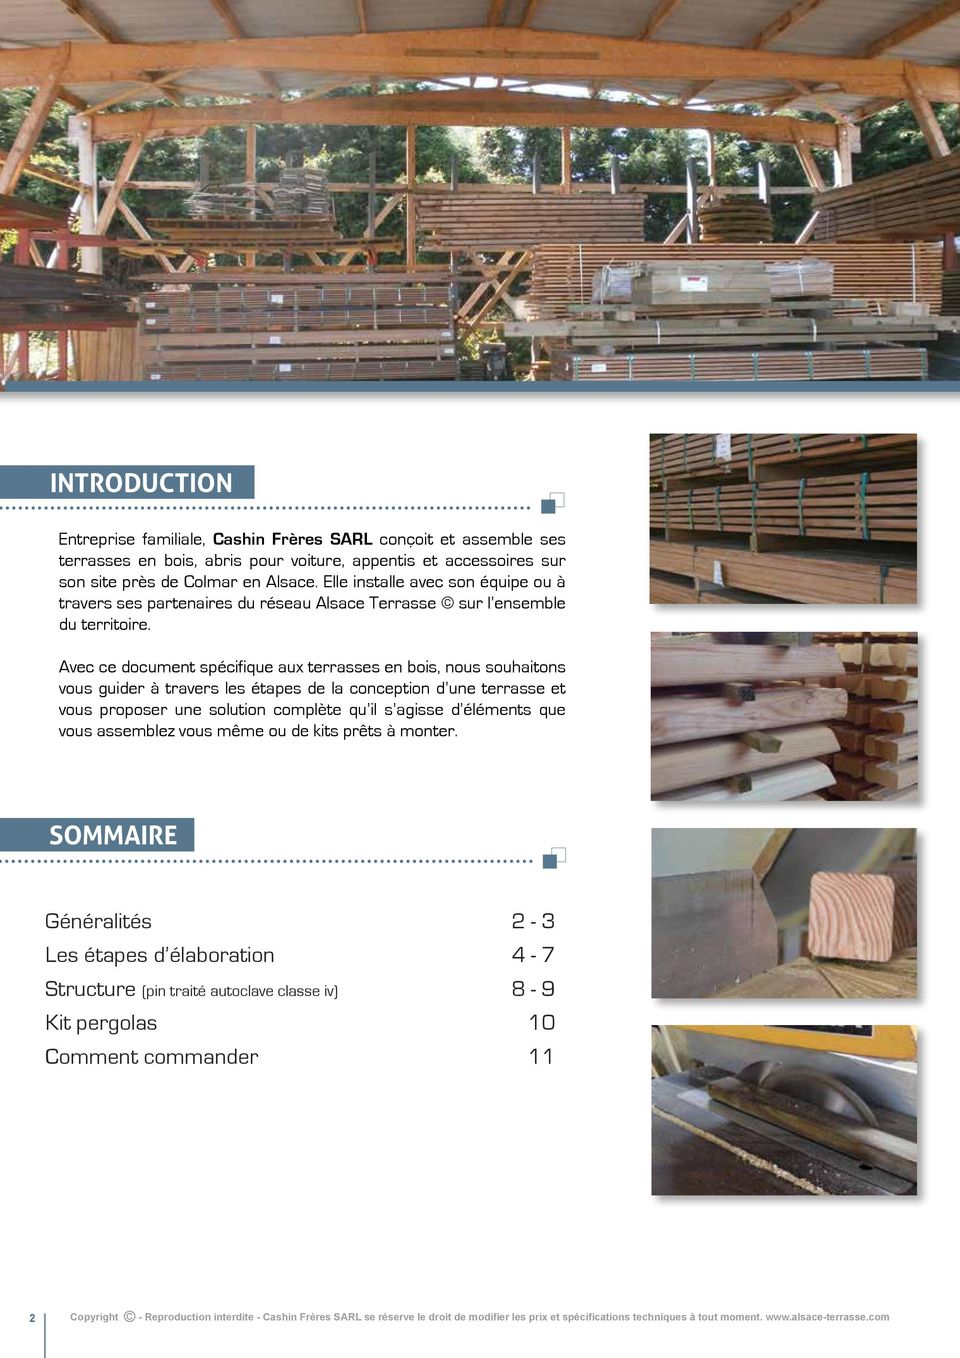 Avec ce document spécifique aux terrasses en bois, nous souhaitons vous guider à travers les étapes de la conception d une terrasse et vous proposer une solution complète qu il s agisse d éléments